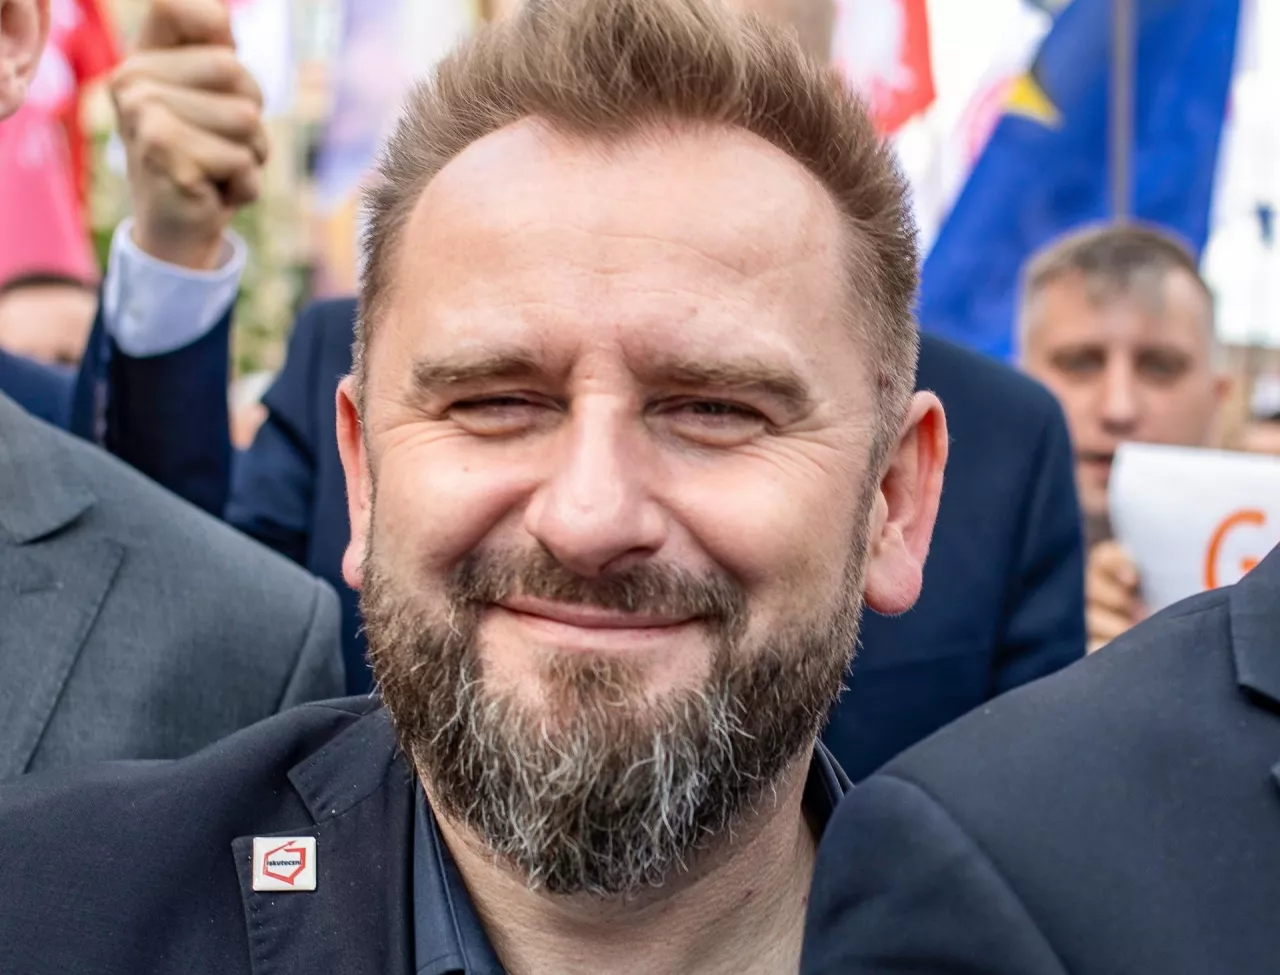 Piotr Liroy-Marzec, raper i były poseł na Sejm RP (fot. Szymon Mucha / Shutterstock.com)